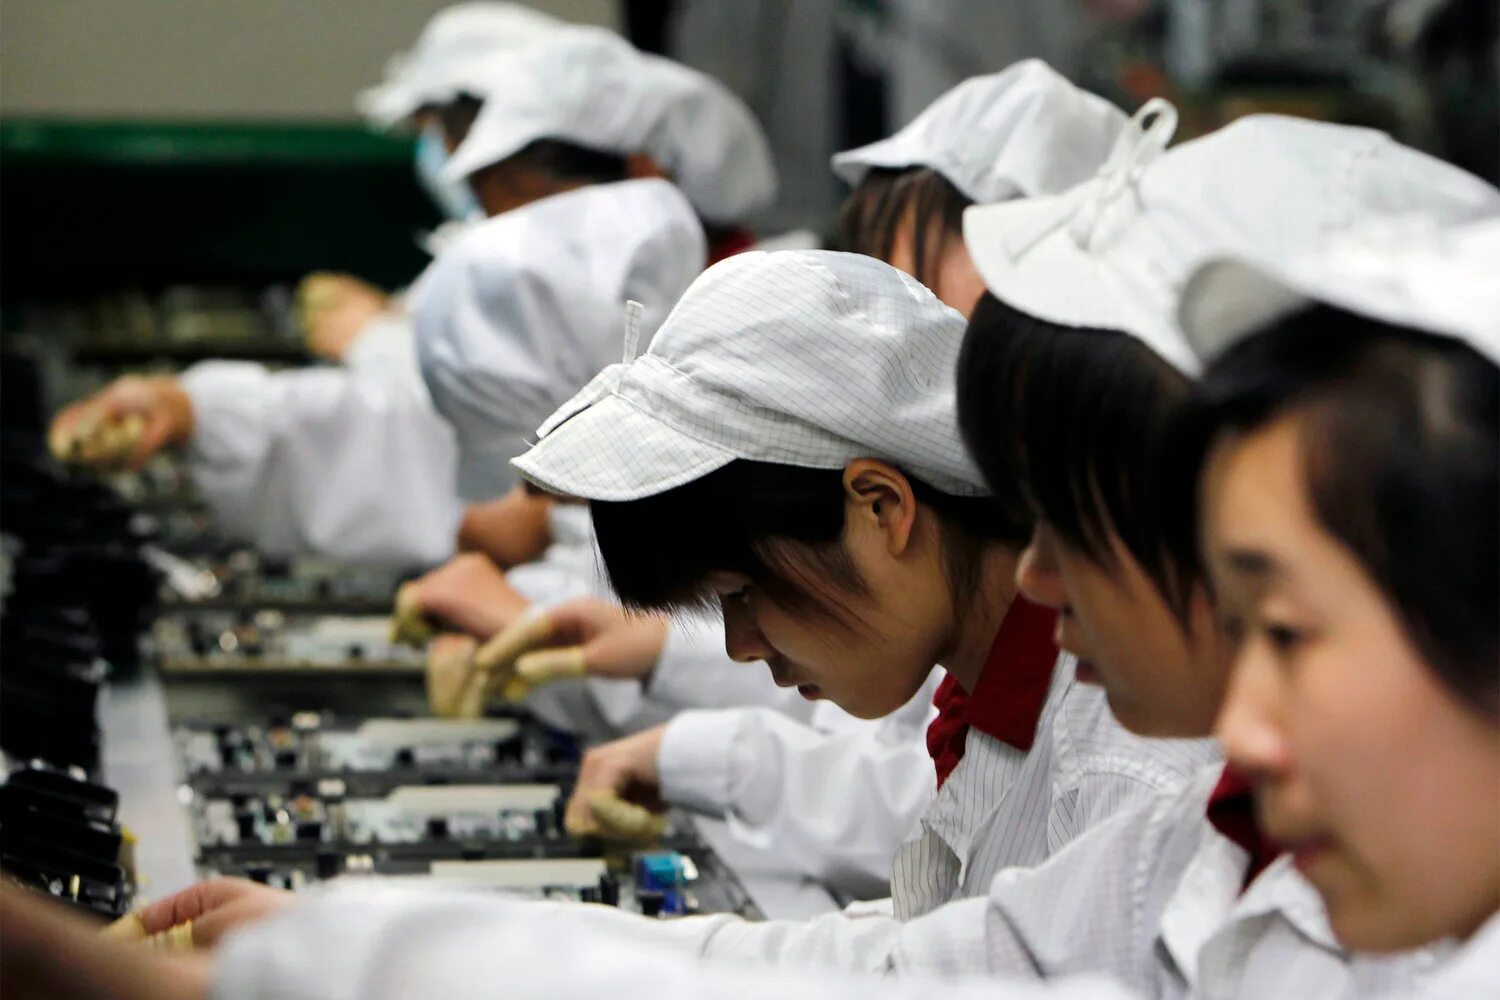 Фабрика Фоксконн Китай. Завод Foxconn в Китае. Китайцы на заводе. Труд в Китае. Китайский завод по производству